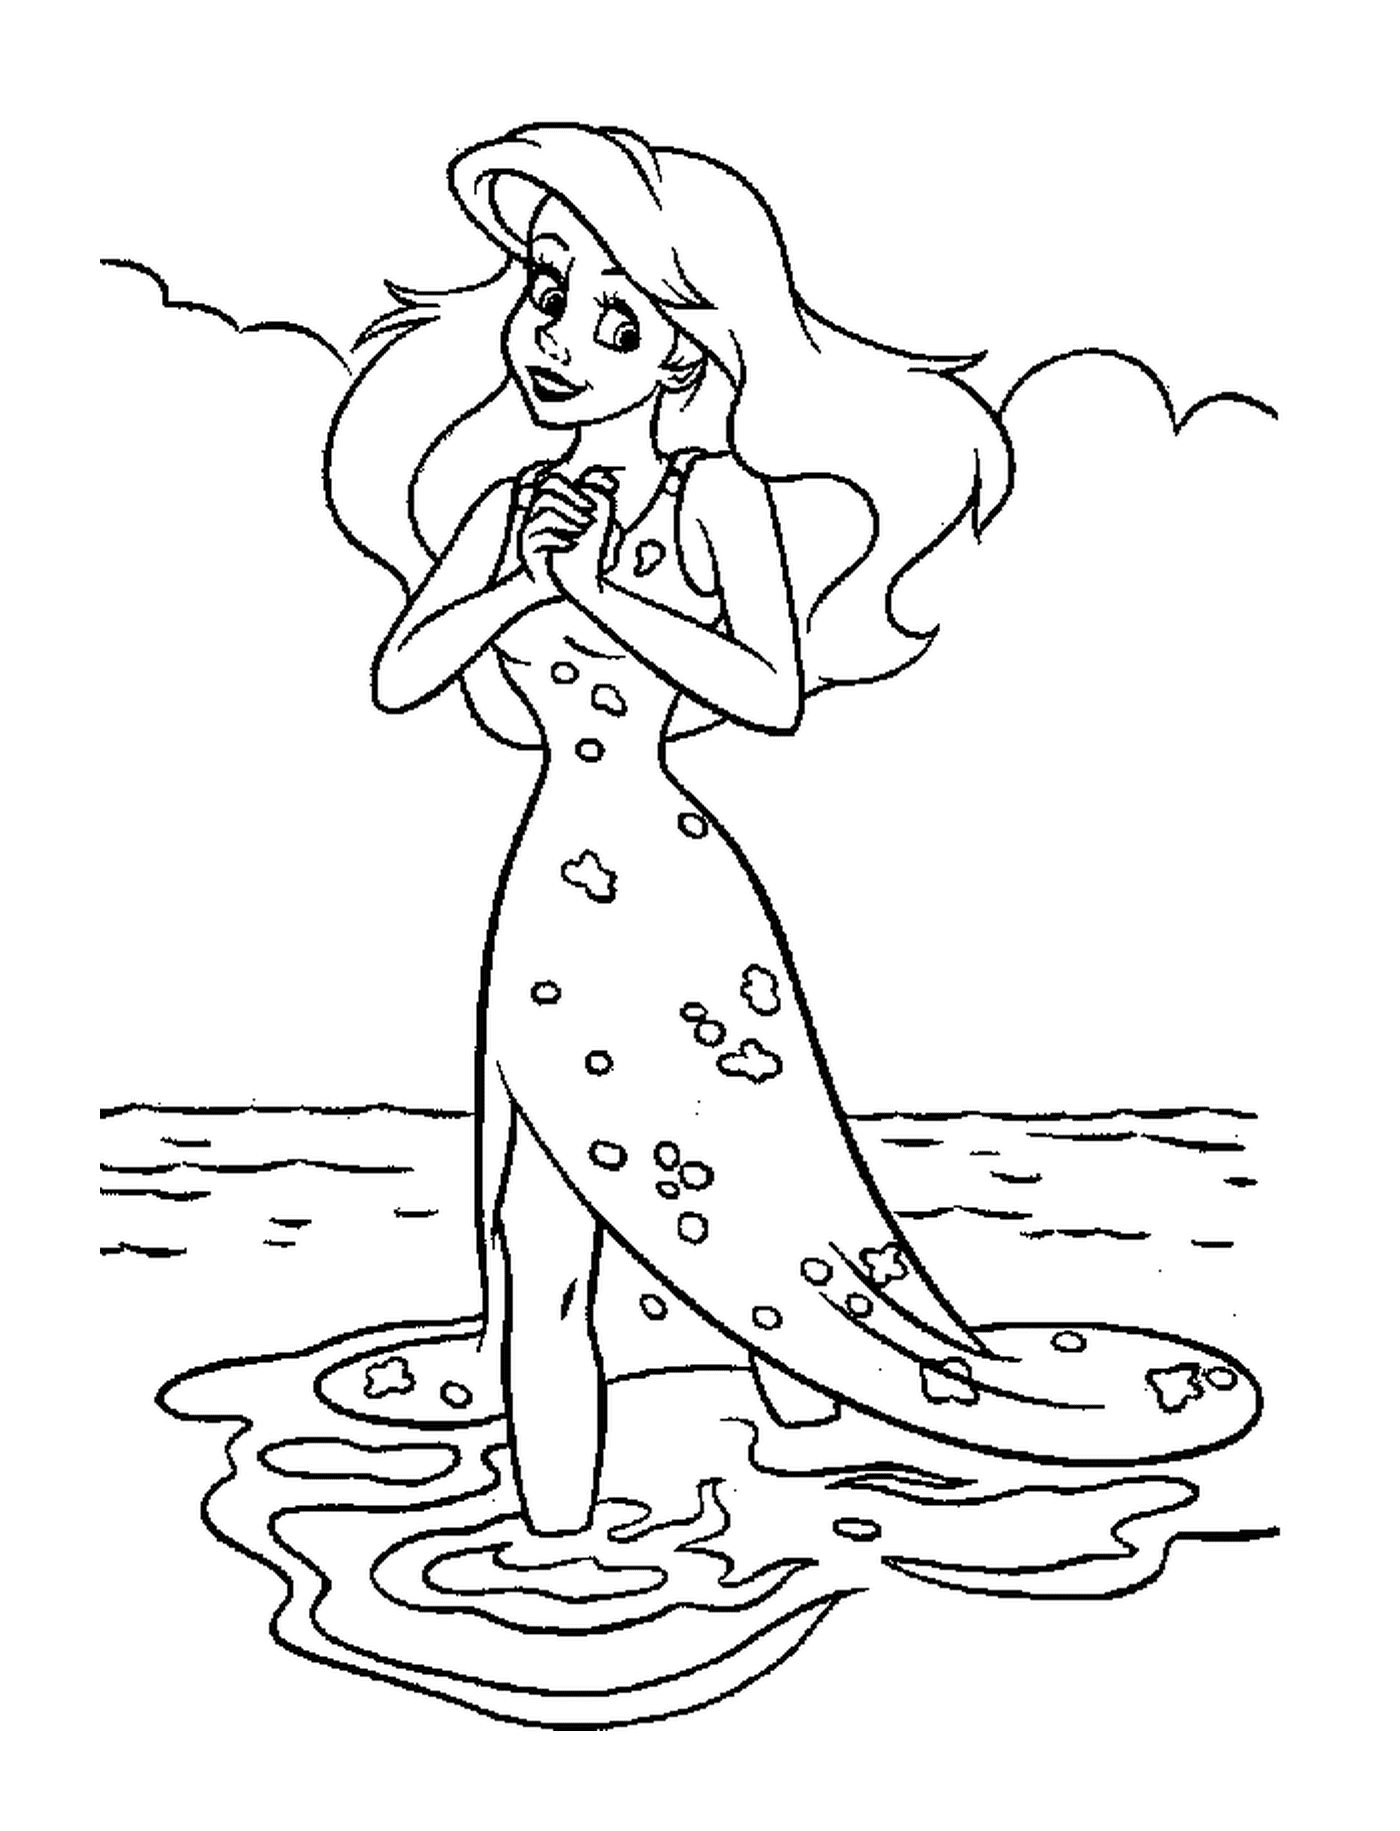   Une femme debout dans l'eau 